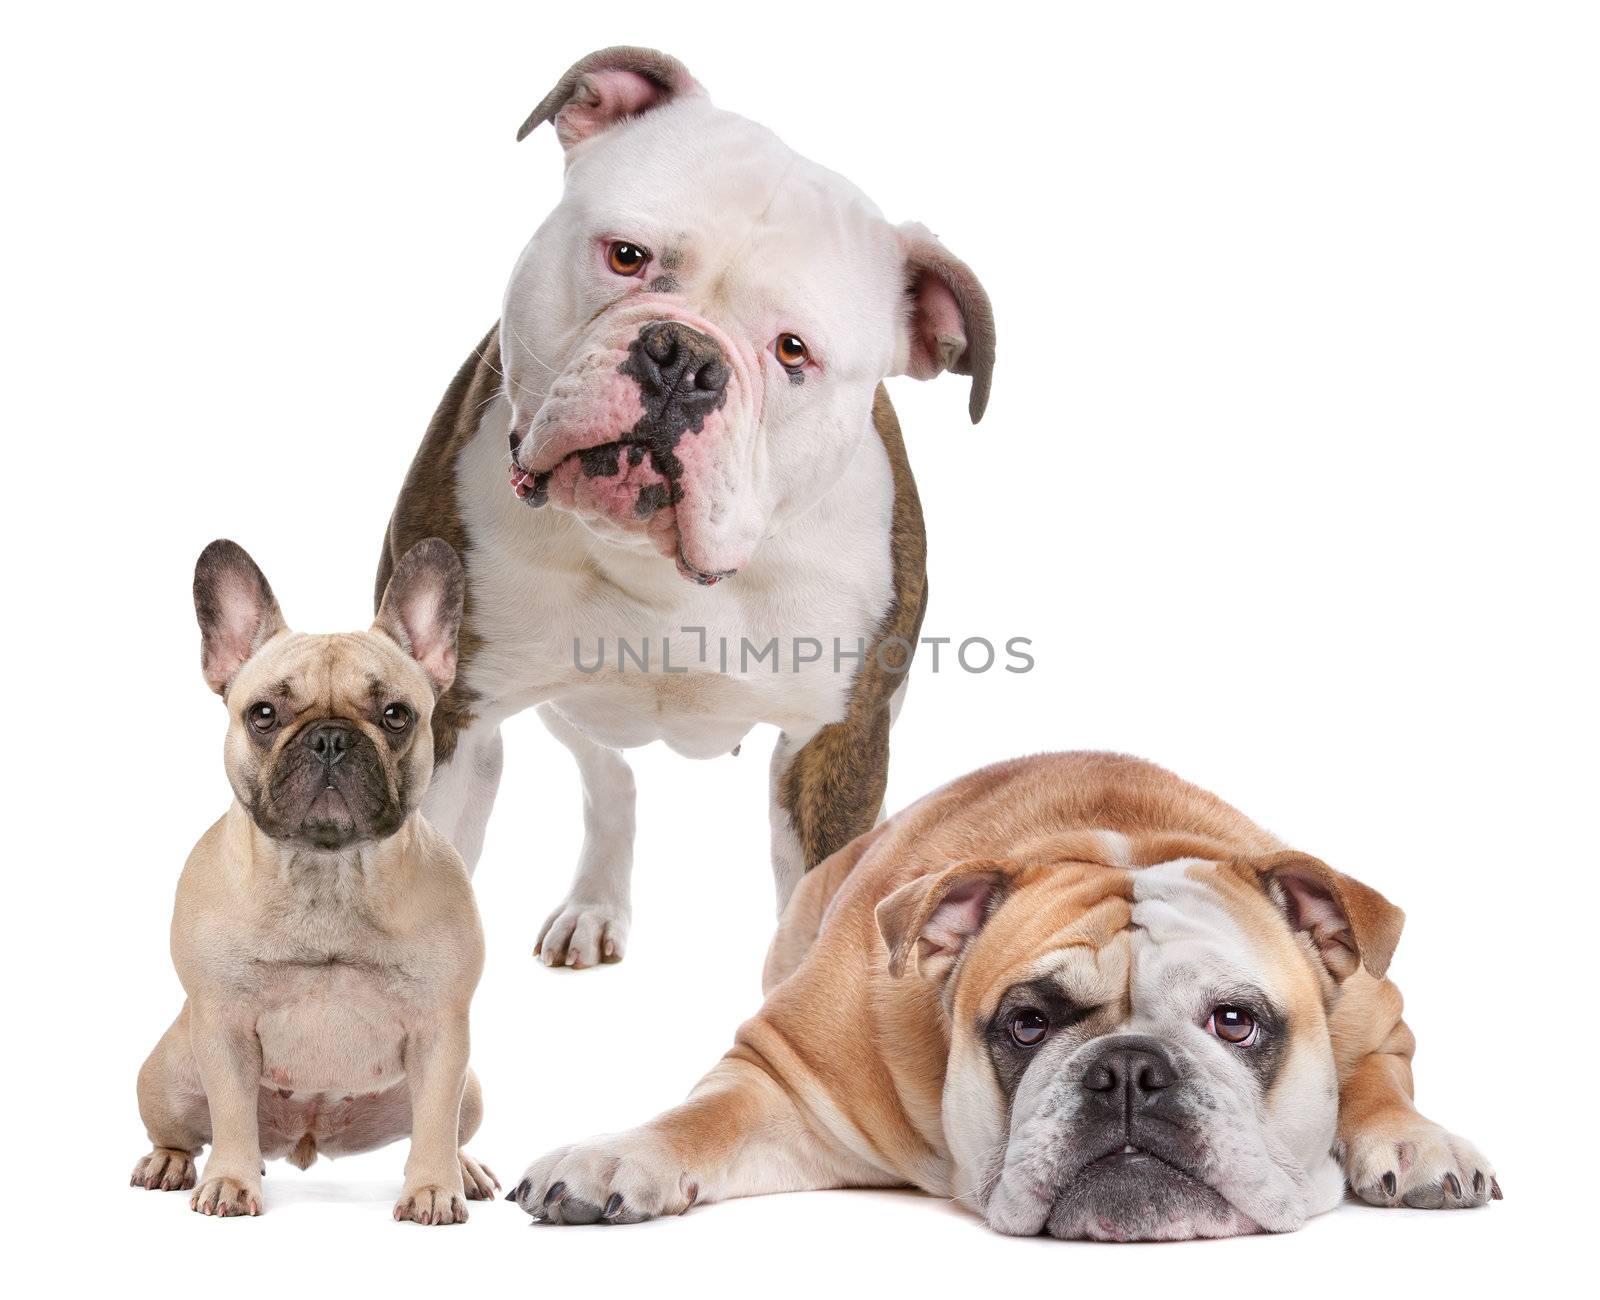 The Bulldog Family. French Bulldog,American Bulldog and English Bulldog